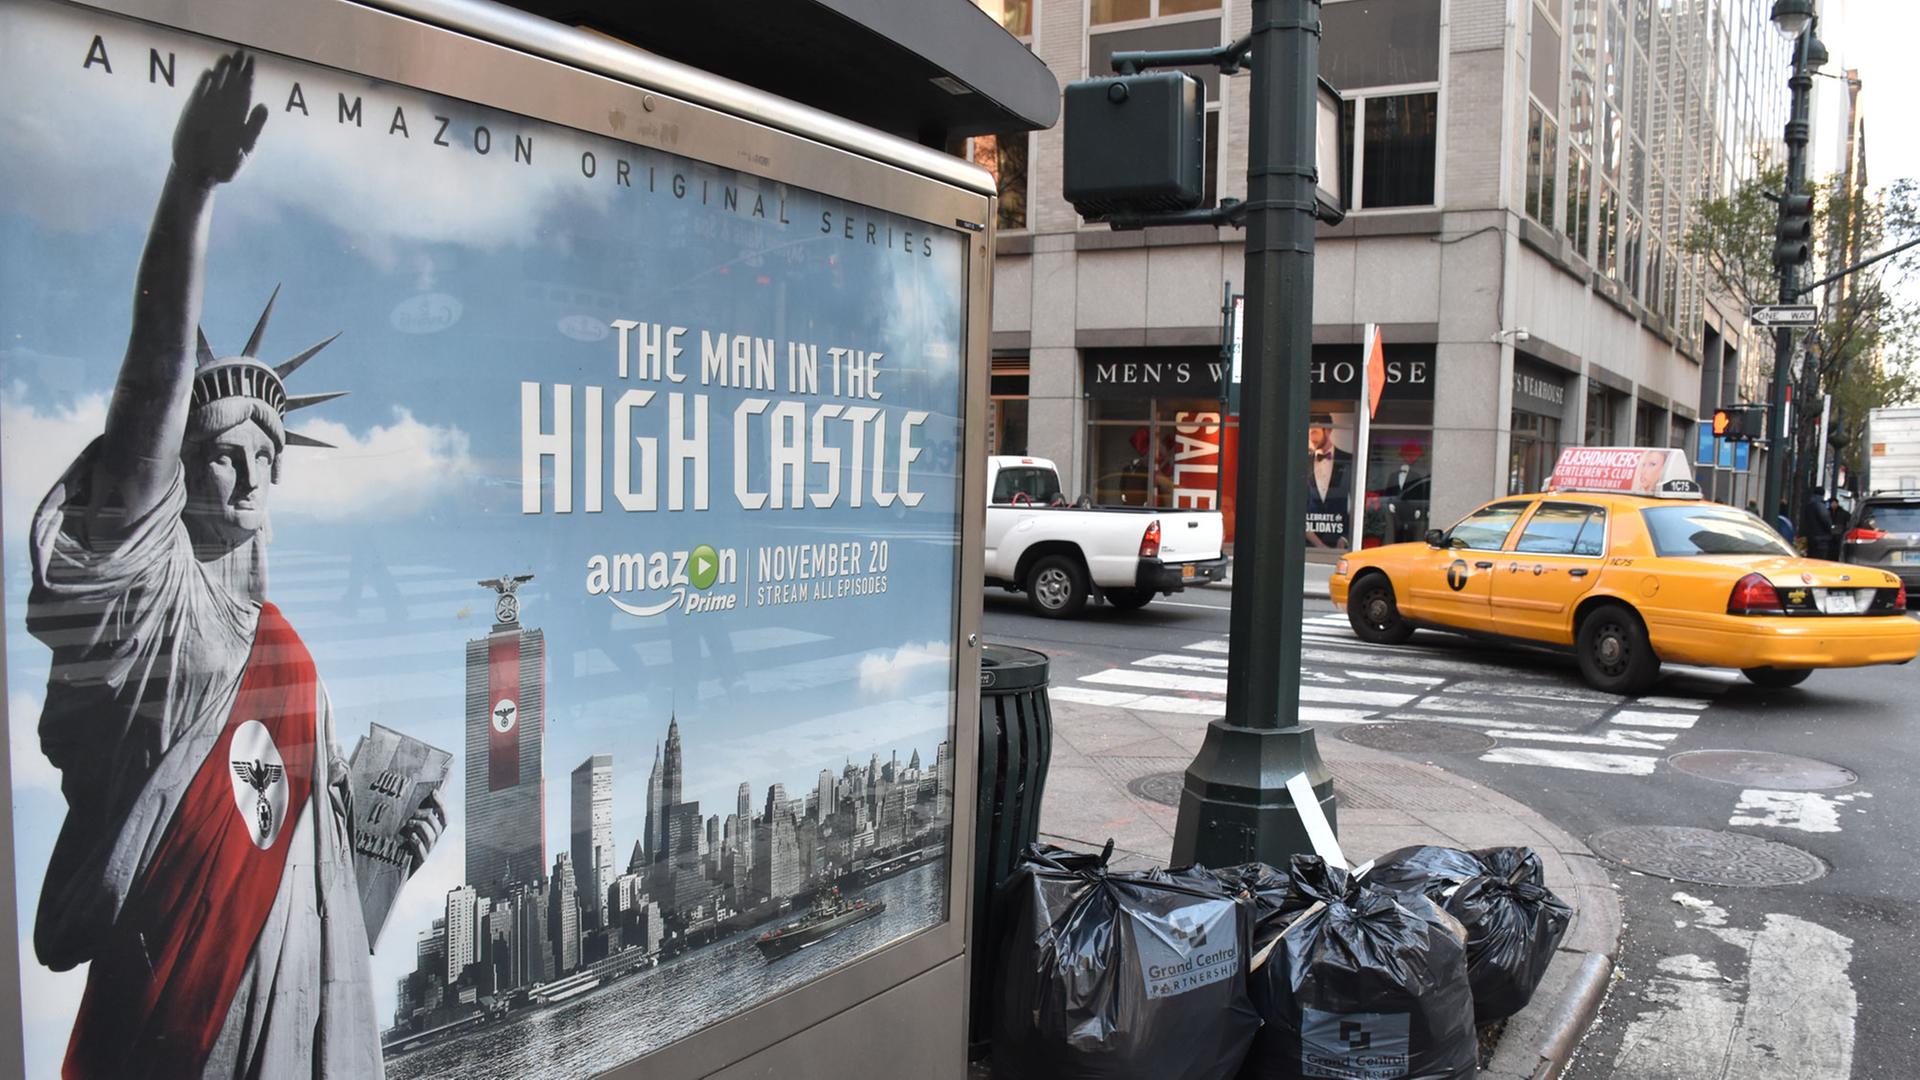 Ein Taxi fährt am 25.11.2015 auf der New Yorker Third Avenue an einem umstrittenen Werbeplakat für die Serie "The Man in the High Castle" vorbei.